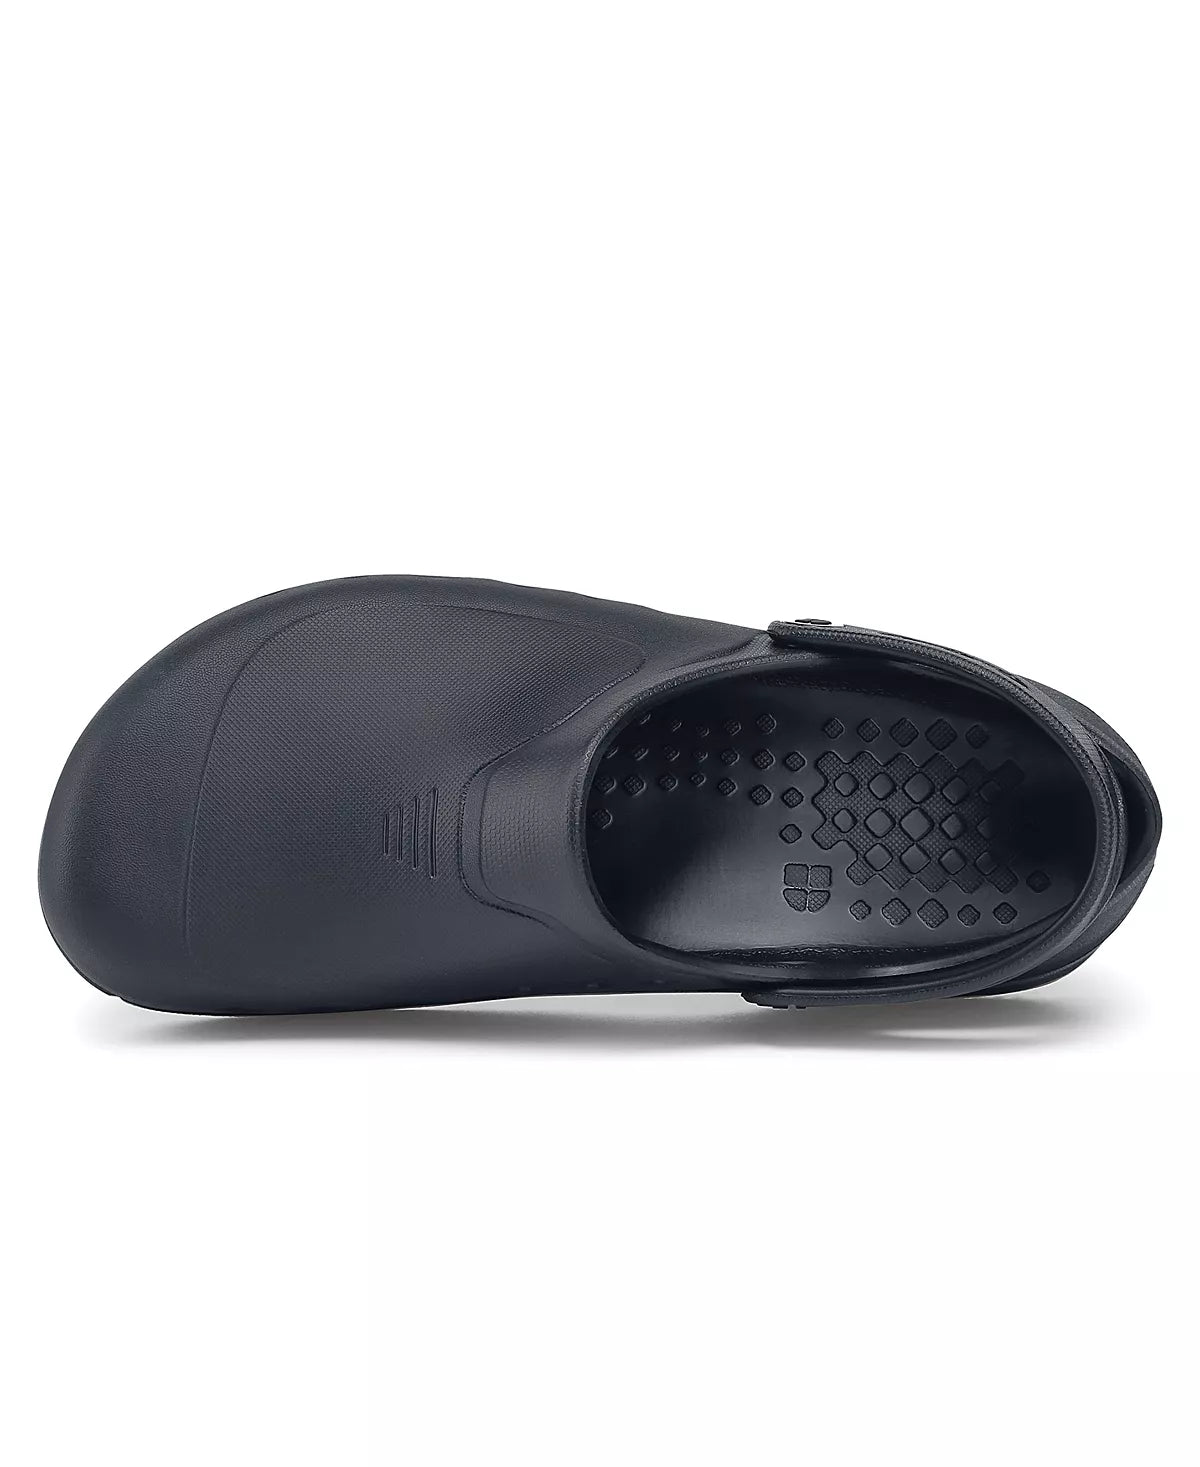 Shoes For Crews Zinc, Unisex Slip Resistant Black  - SZ 9 M